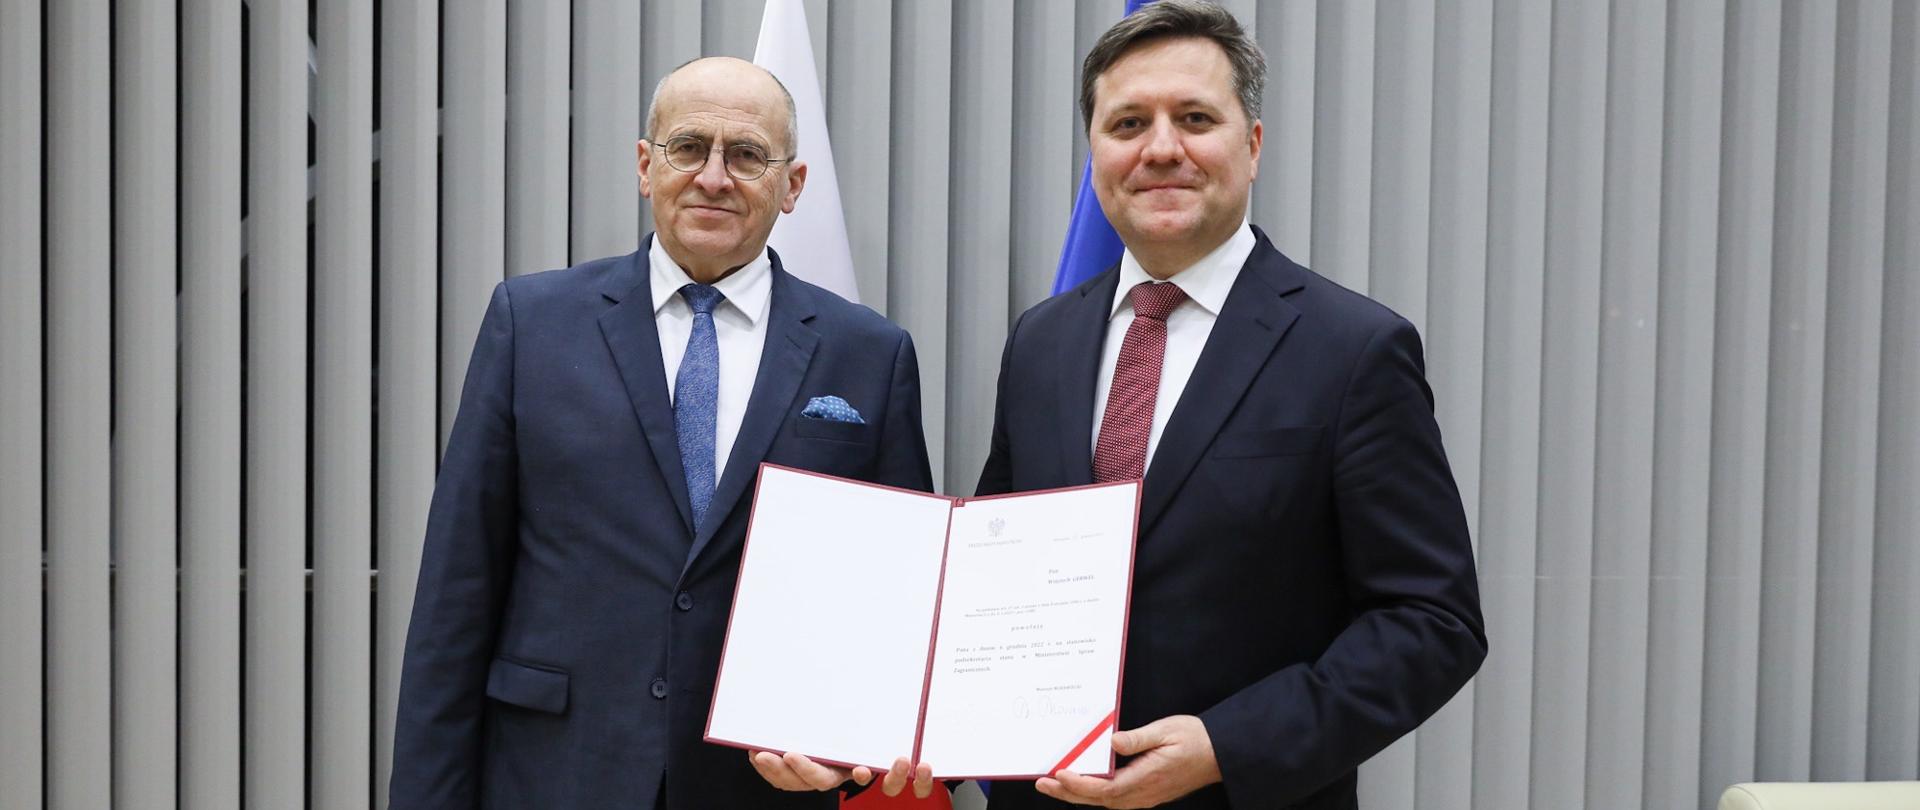 Minister Zbigniew Rau wręczył Wojciechowi Gerwelowi akt powołania na stanowisko wiceministra spraw zagranicznych.